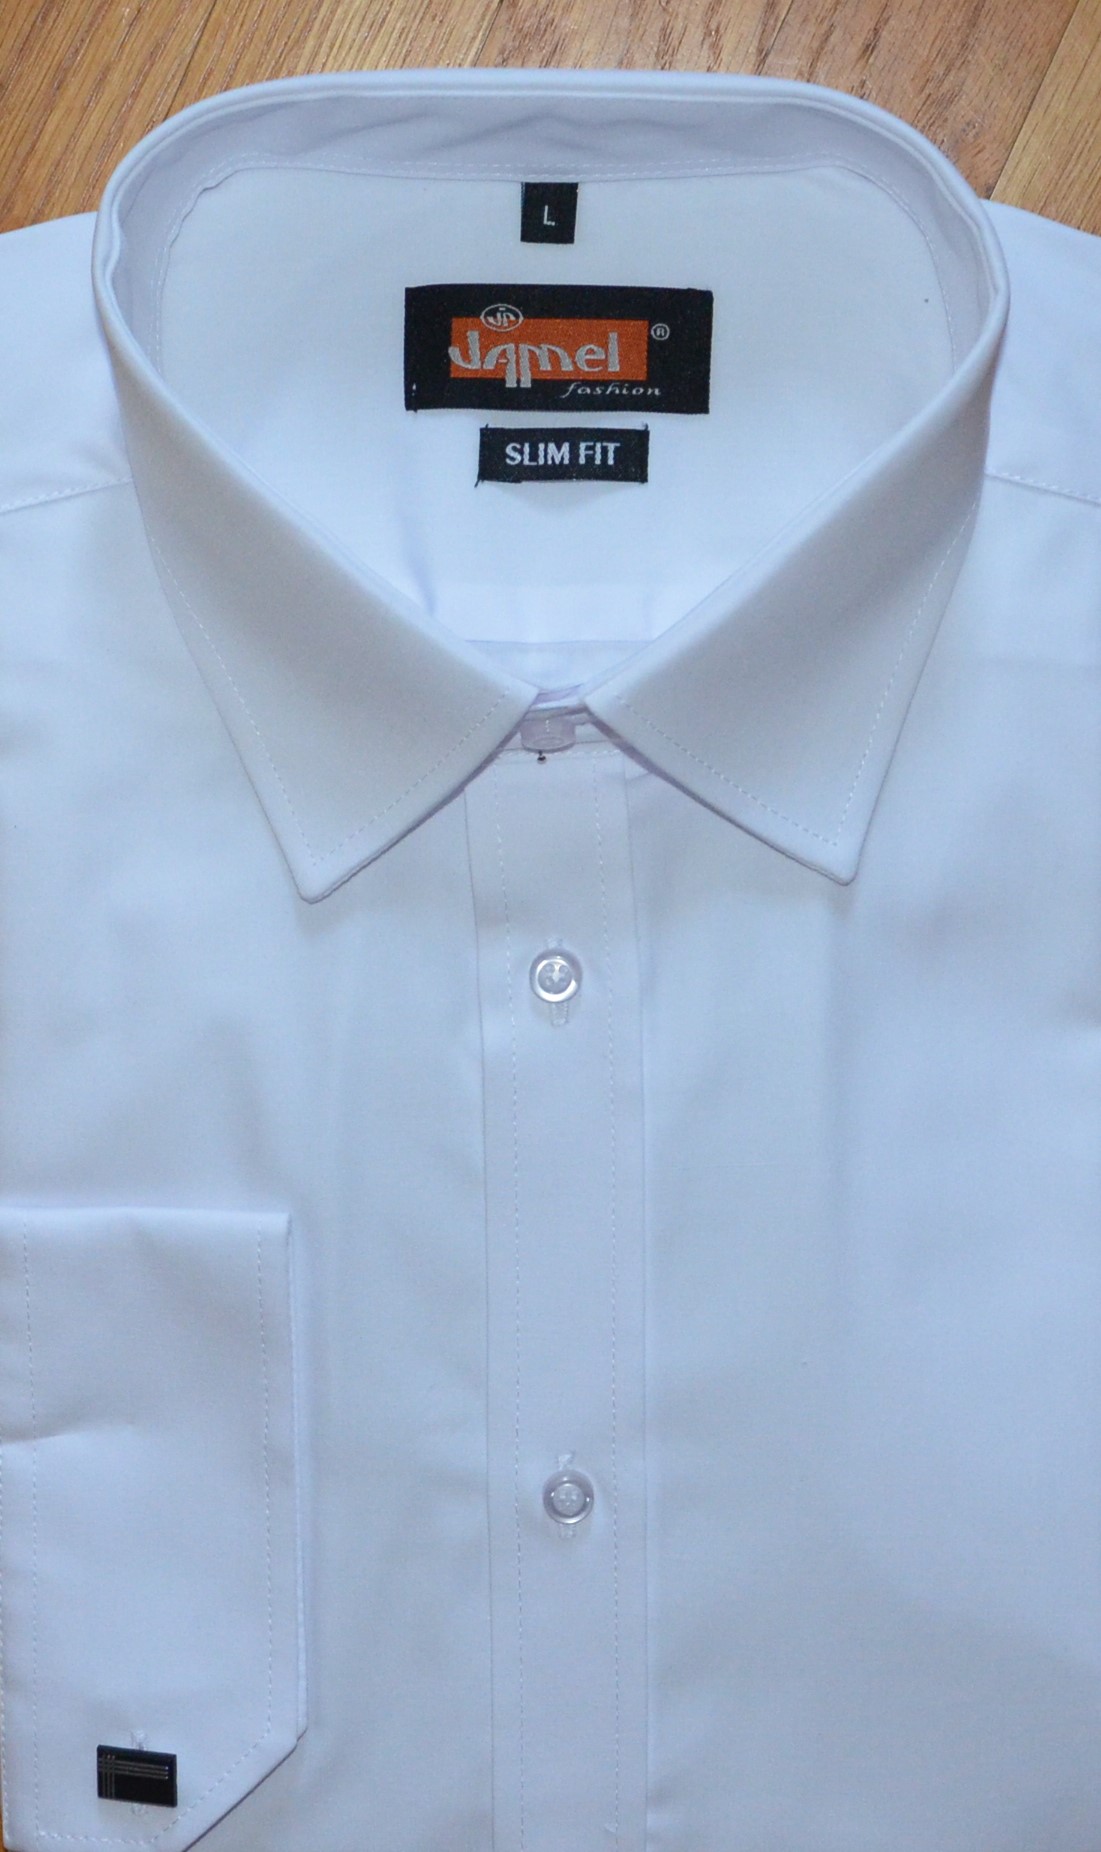 Pánská košile dlouhý rukáv Jamel Fashion 570 203/20 SLIM FIT Bílá manžetový knoflík Velikost: 45-46 XXL